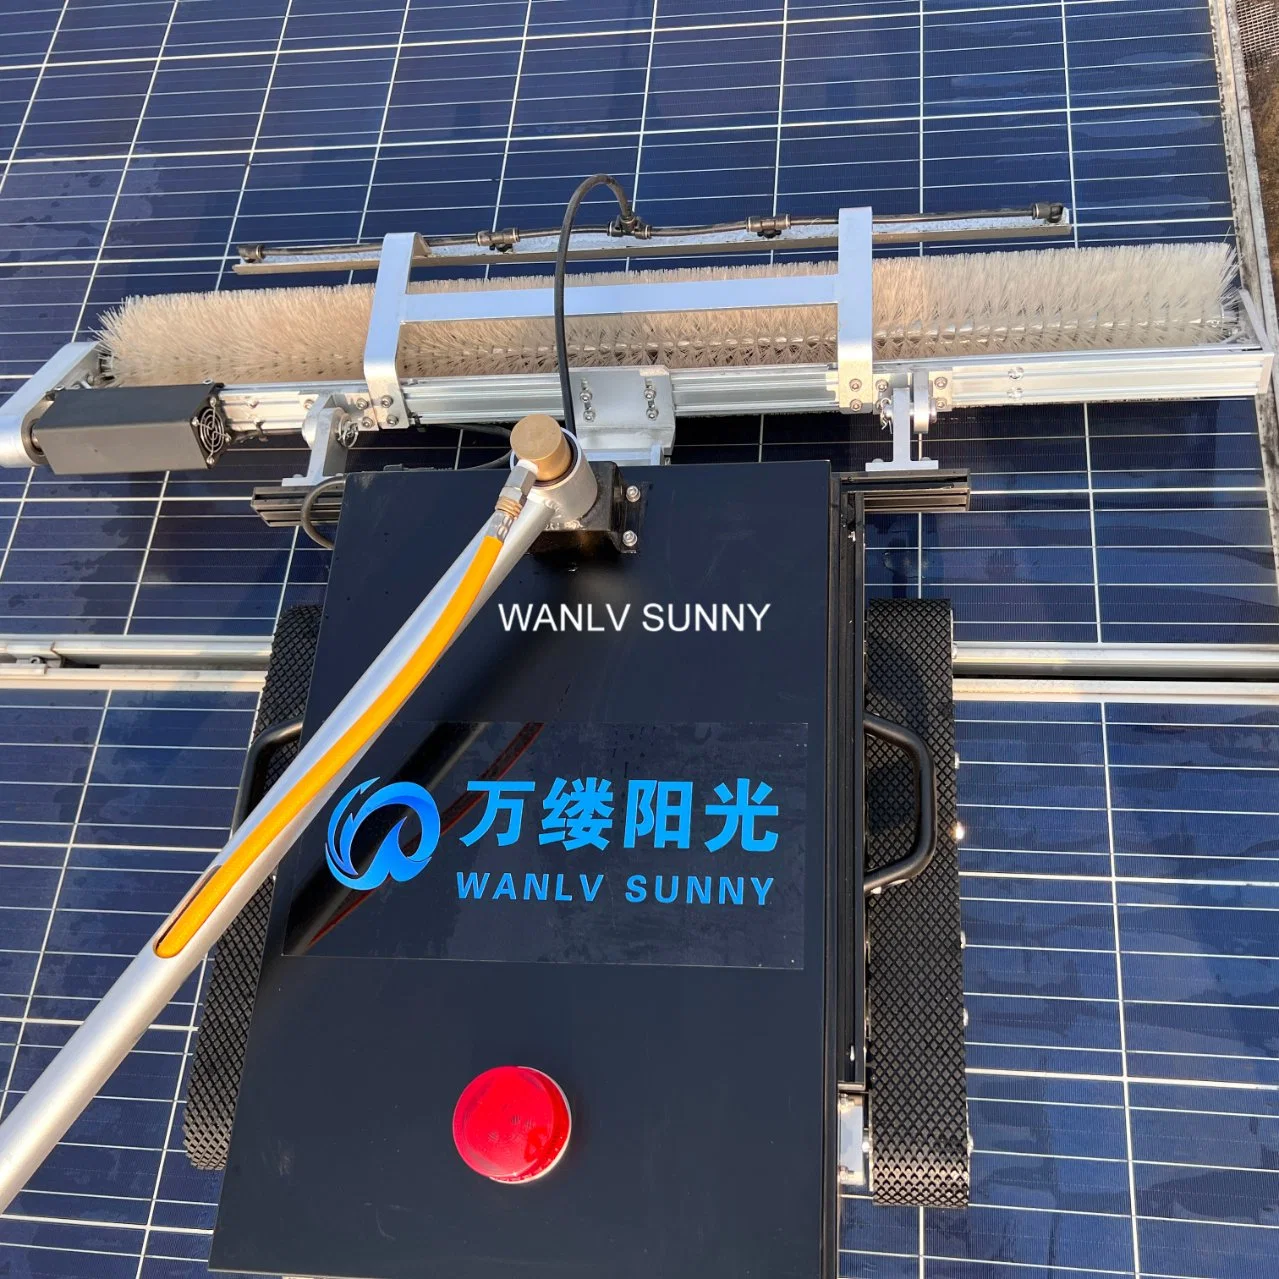 Solar Panel Limpieza Robot Solar Reinigung Solar Herramientas de Limpieza para Propietarios de granjas solares comerciales